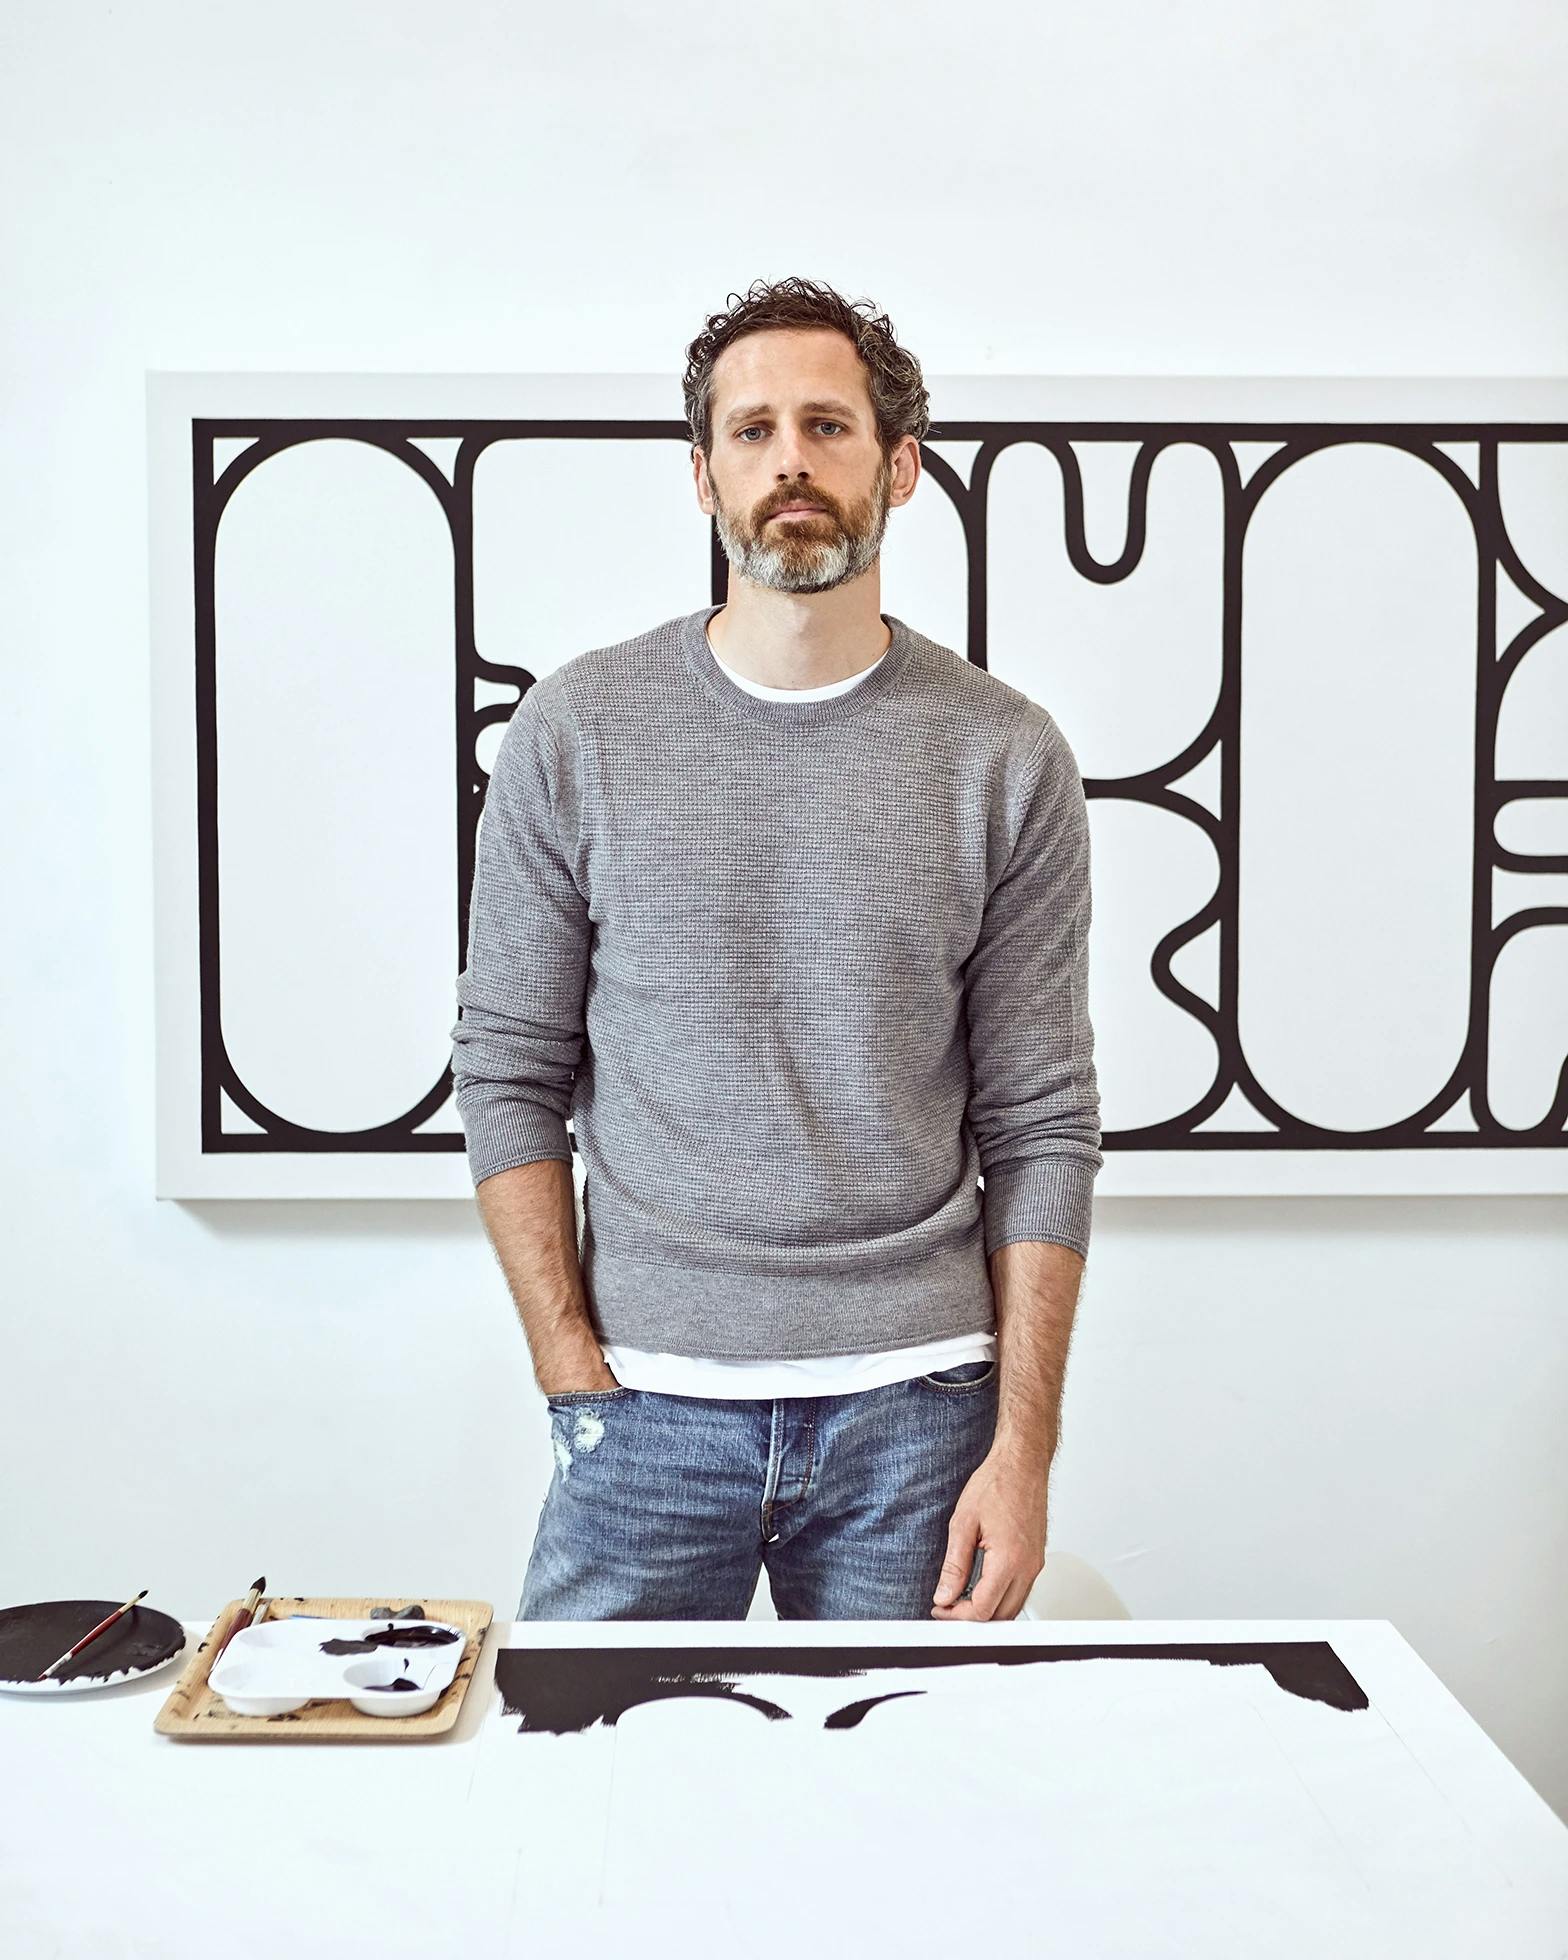 Portrait of Artist Dan Covert